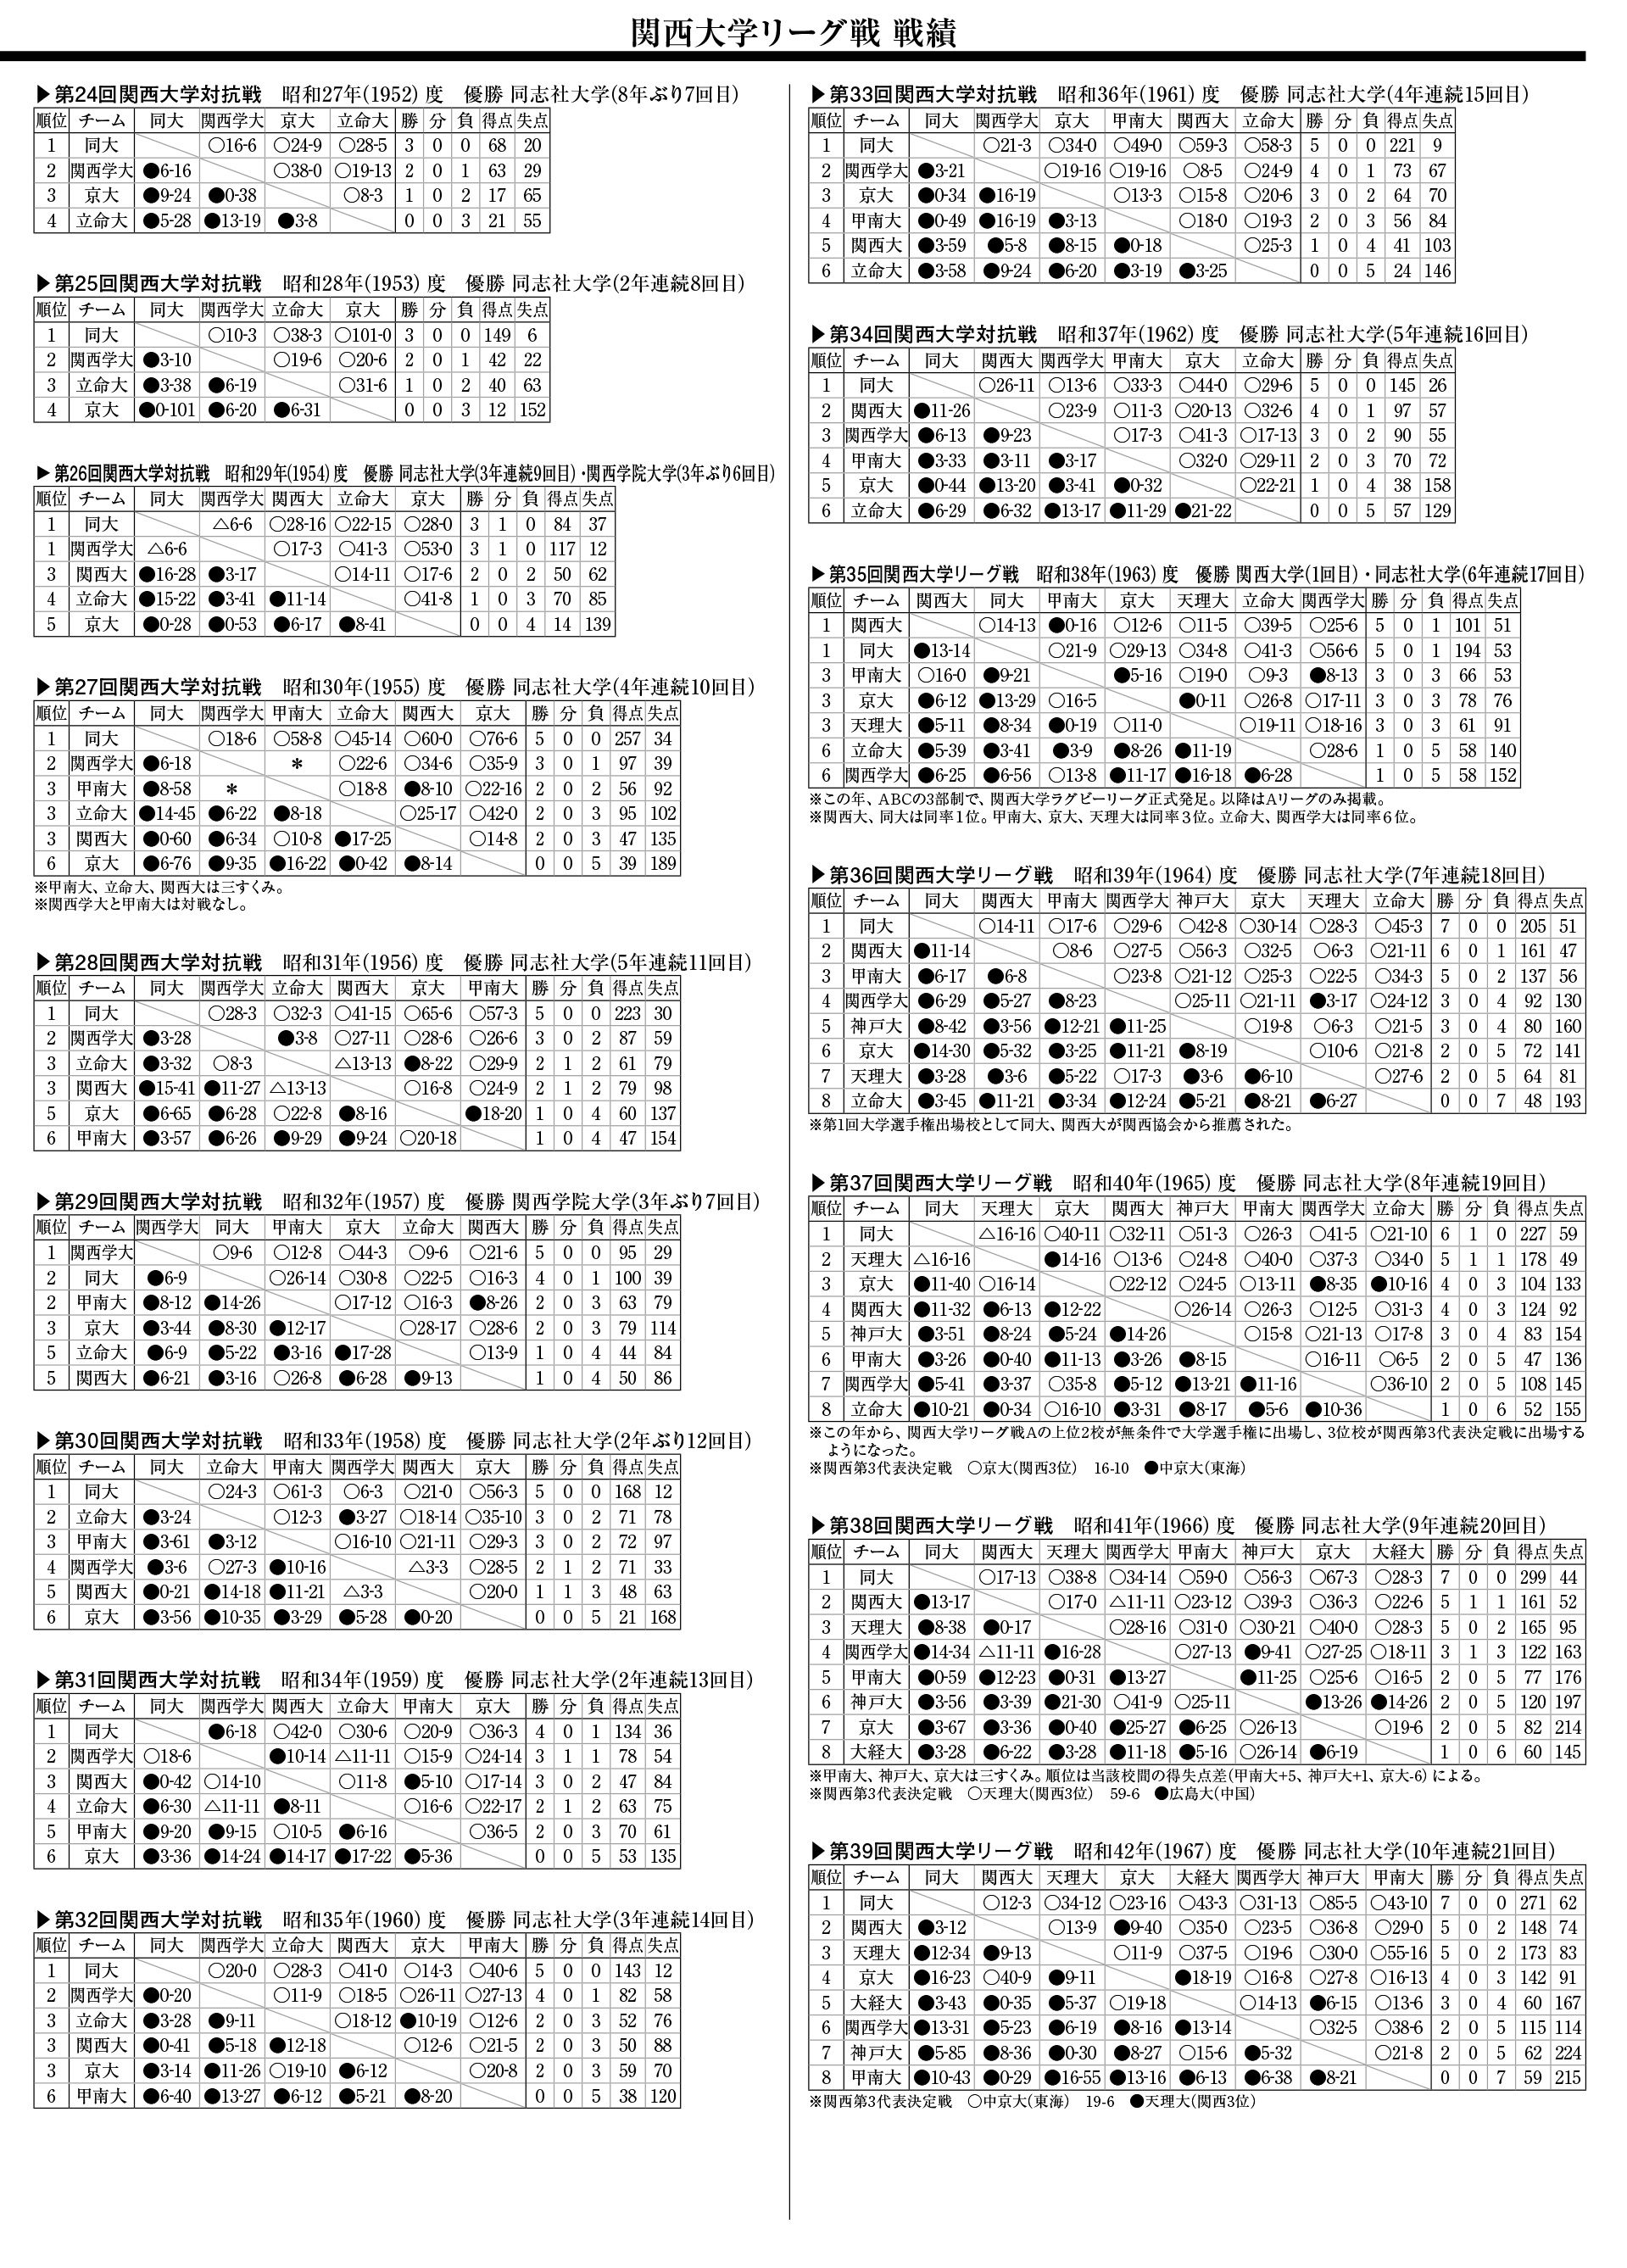 関西大学リーグ戦(第24回～39回)戦績一覧